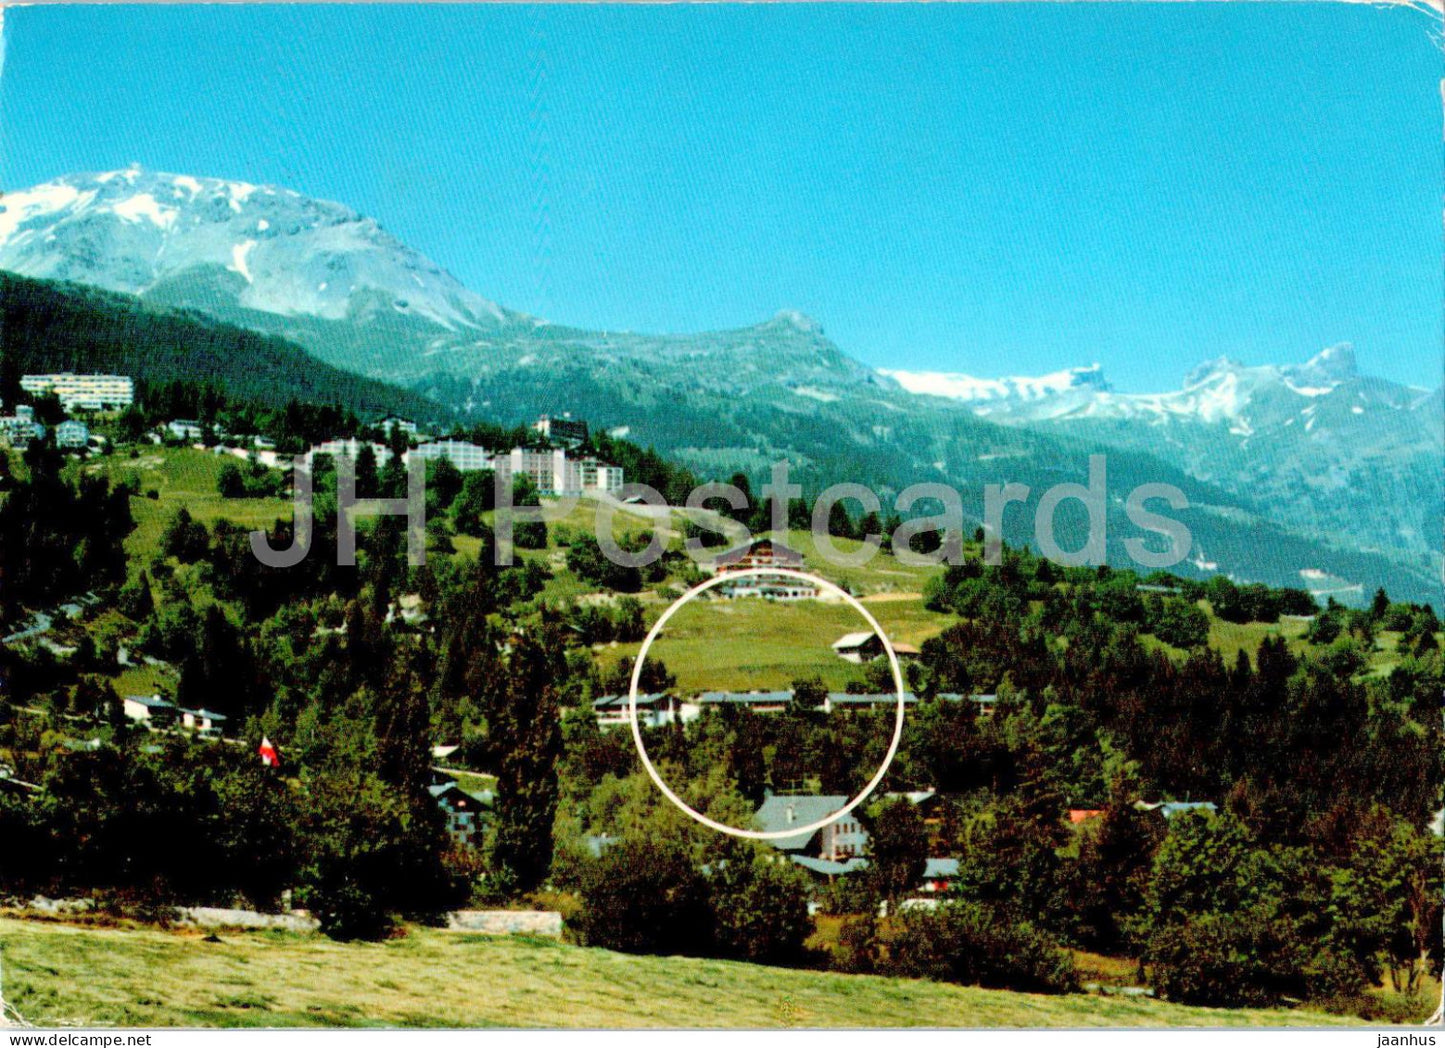 Maisons de vacances FSG - Bluche pres de Montana - 1980 - Switzerland - used - JH Postcards